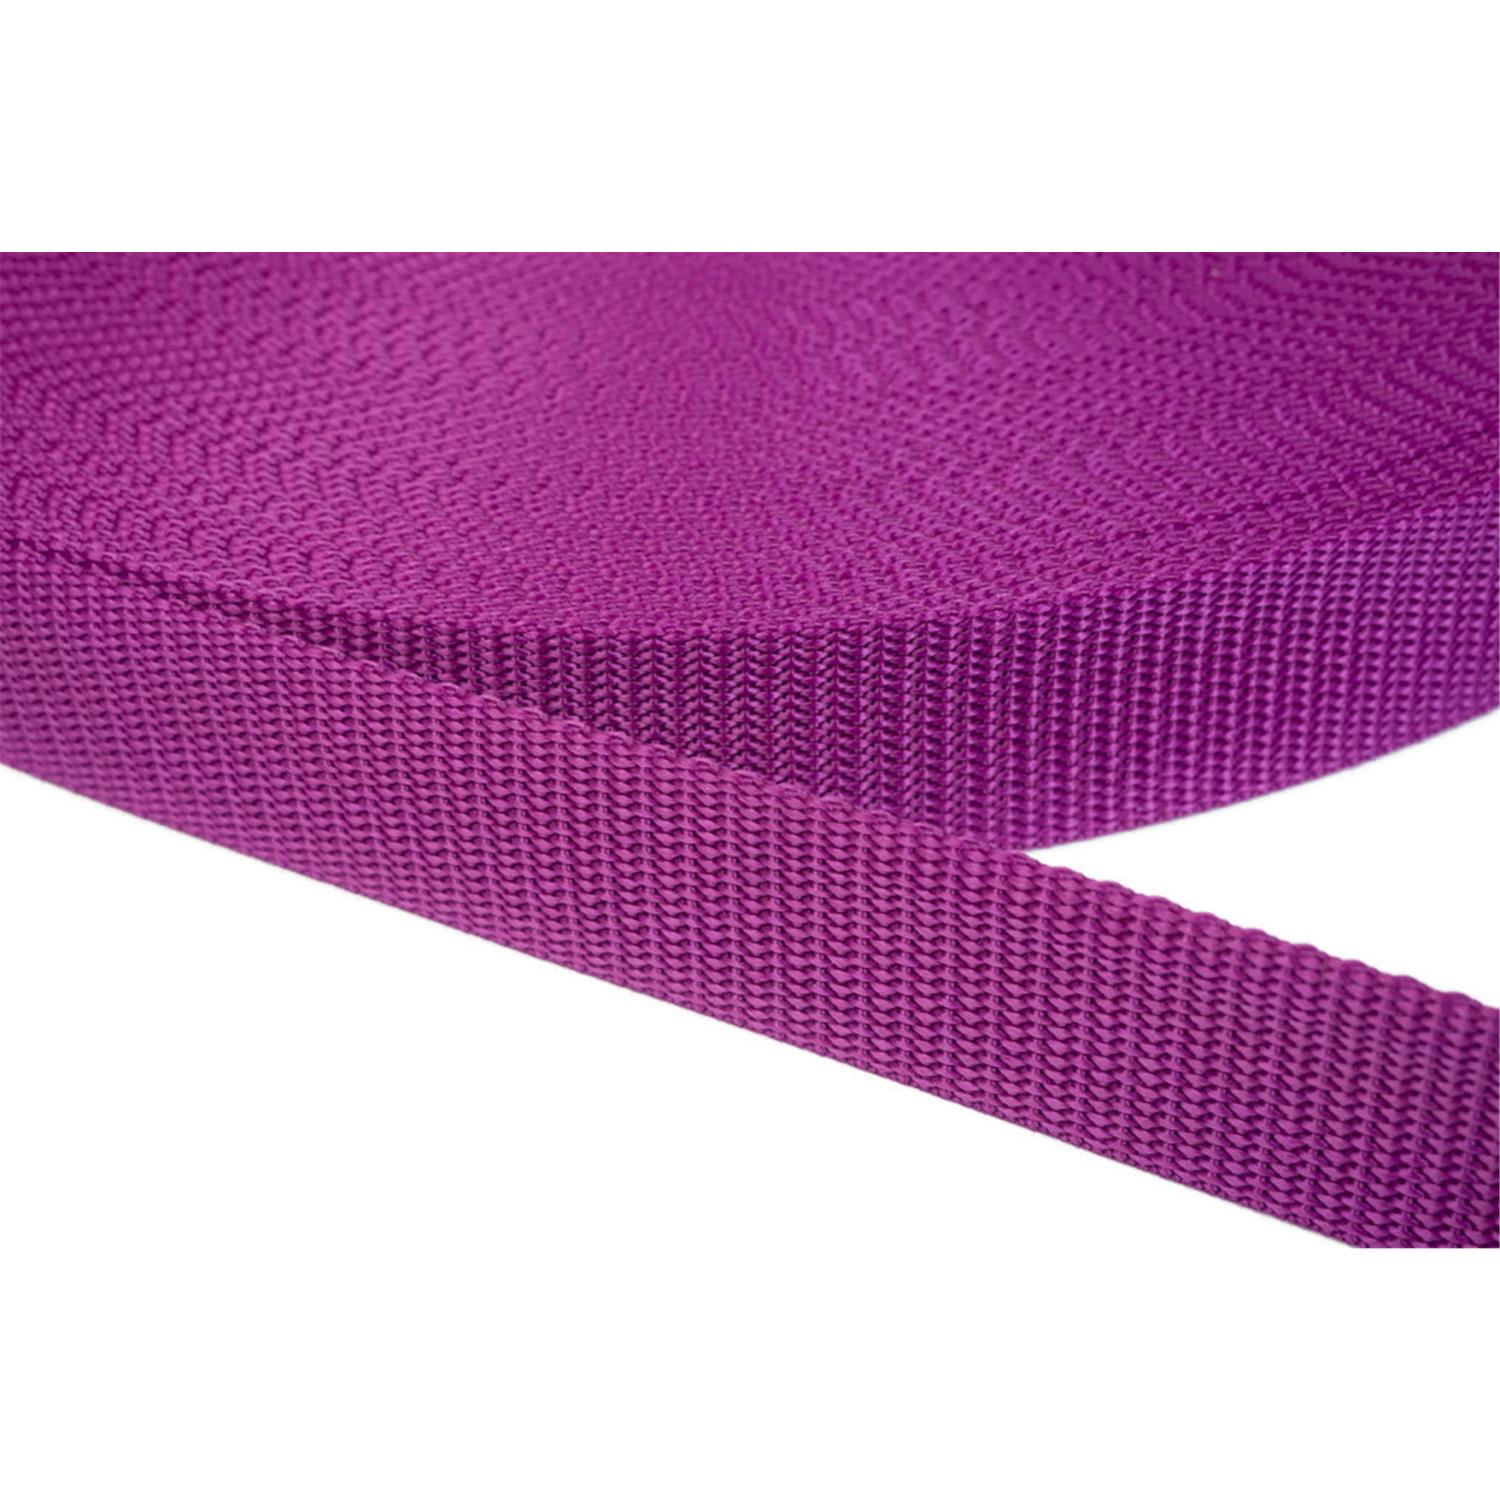 Gurtband 20mm breit aus Polypropylen in 41 Farben 22 - violettrot 12 Meter